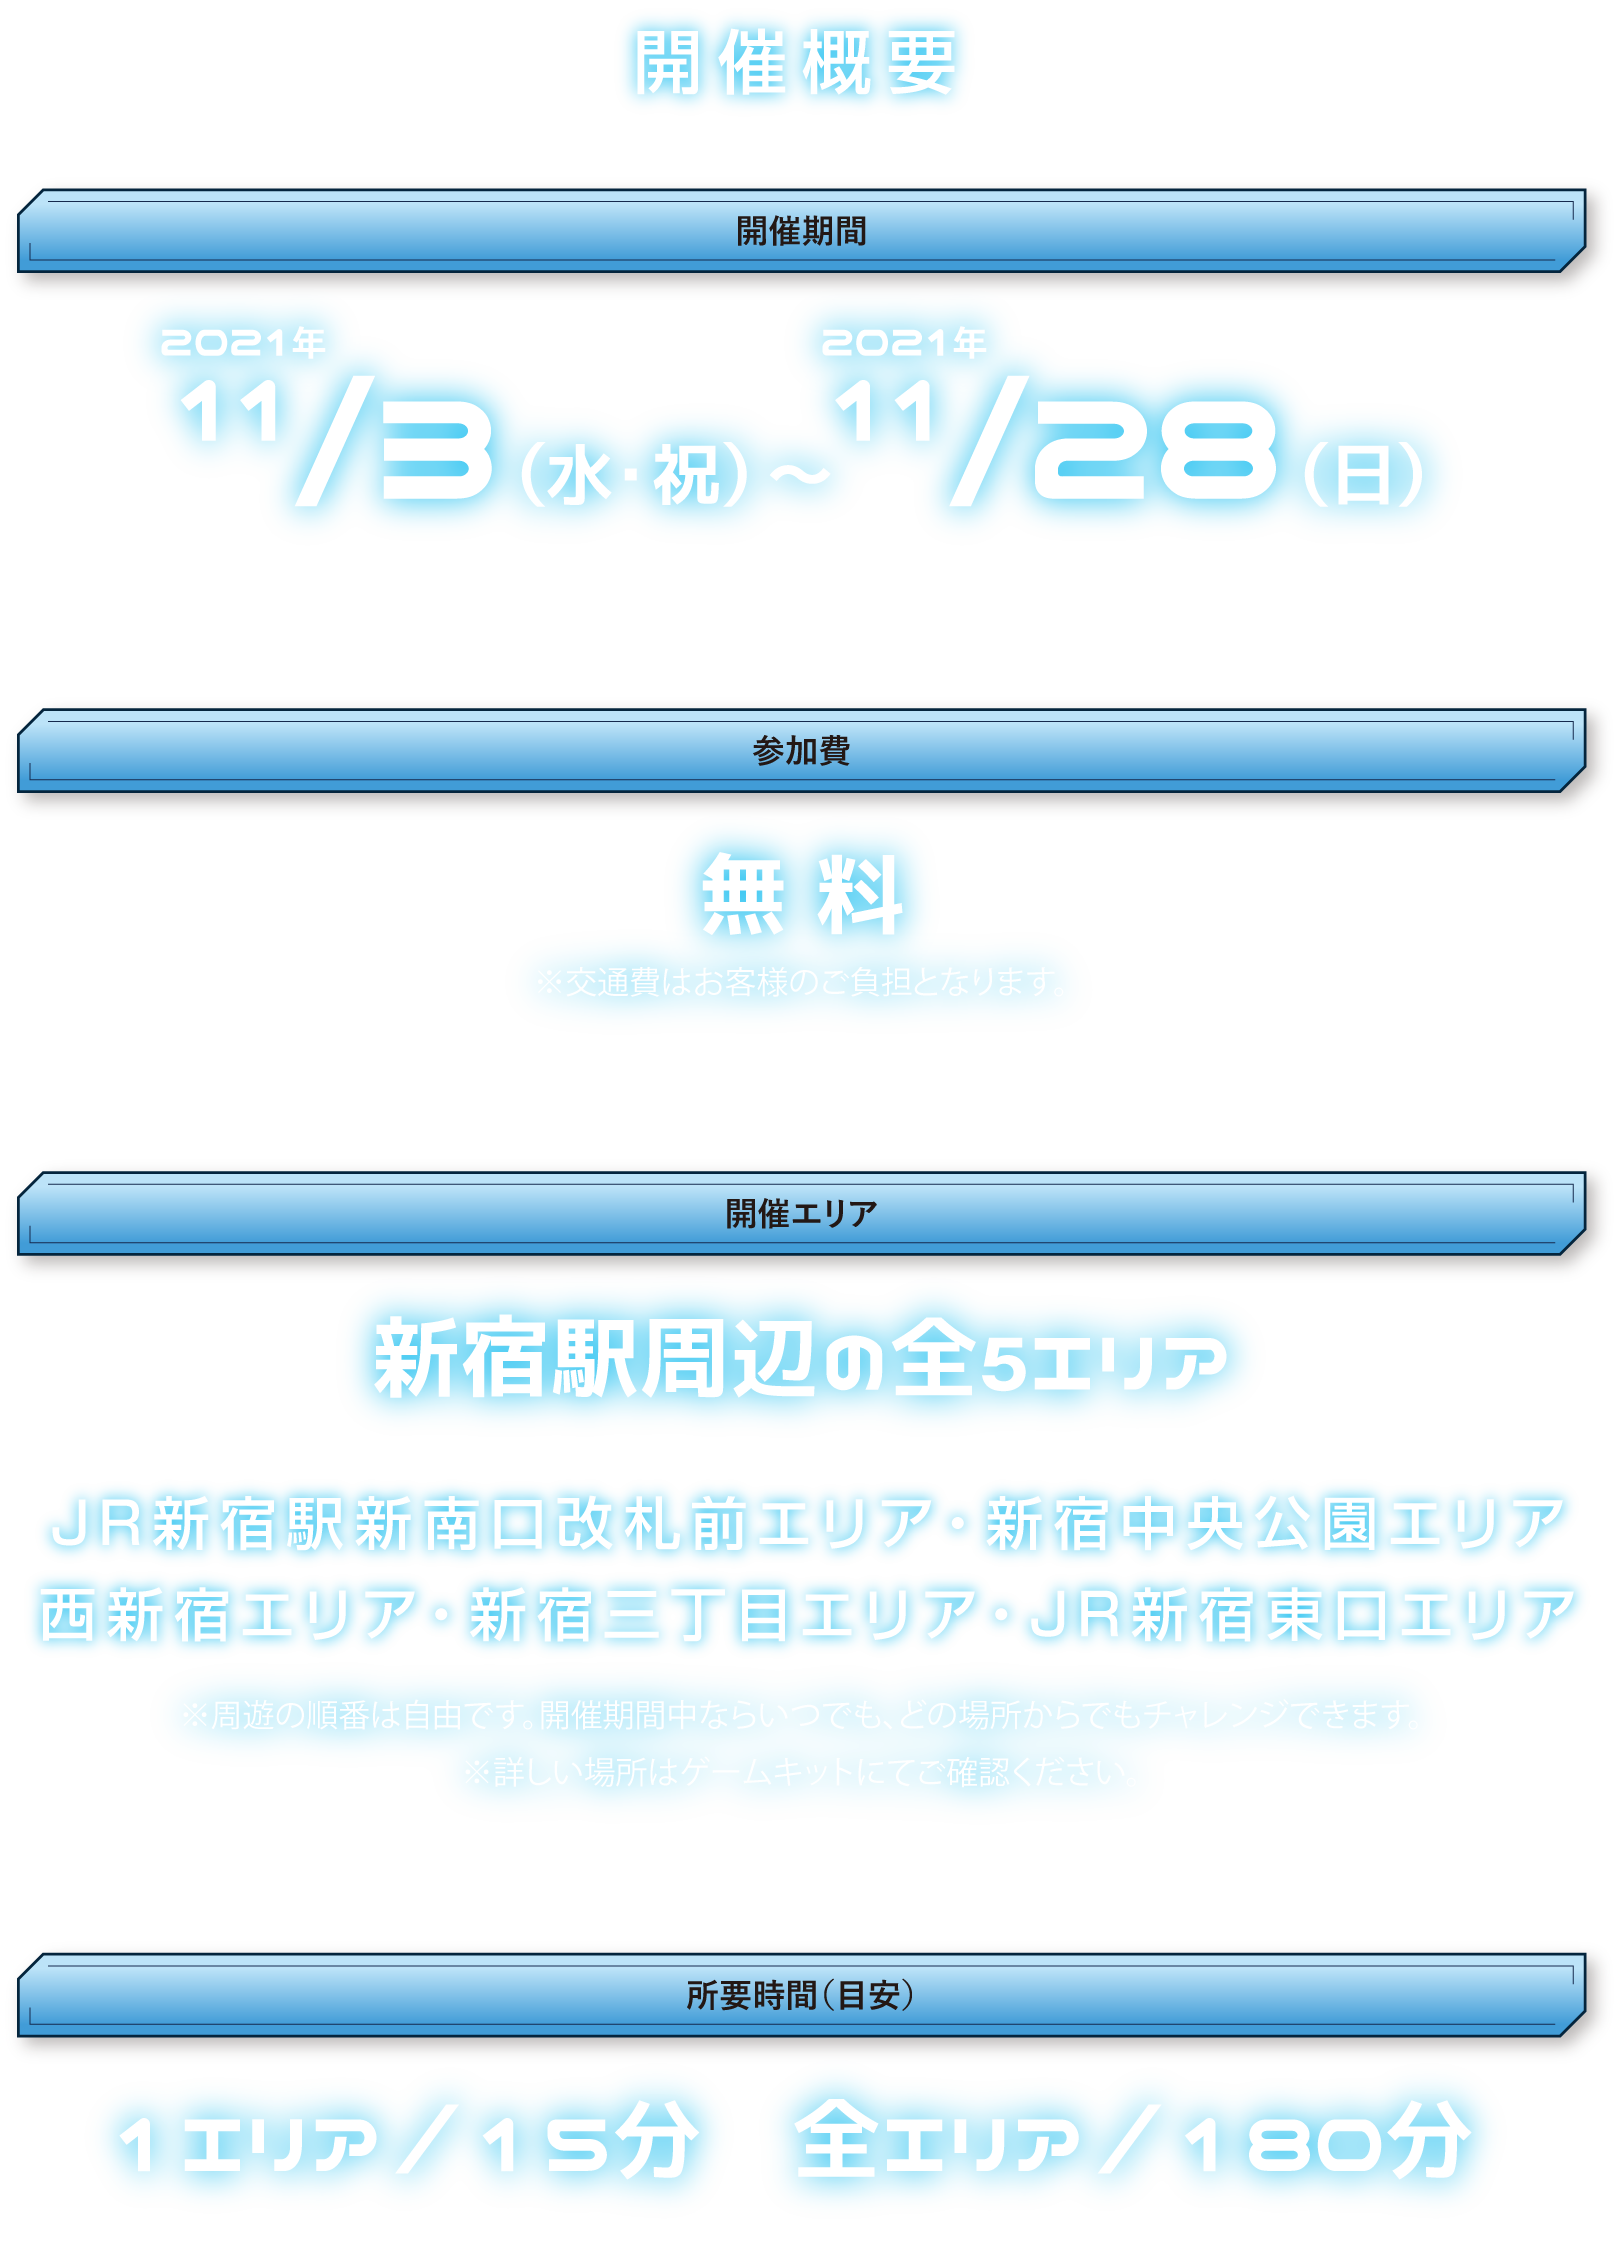 開催概要
開催期間：2021年11月3日(水・祝)～11月28日(日)
参加費：無料
開催エリア：新宿駅周辺の全5スポット
所要時間：1エリア15分　全エリア180分